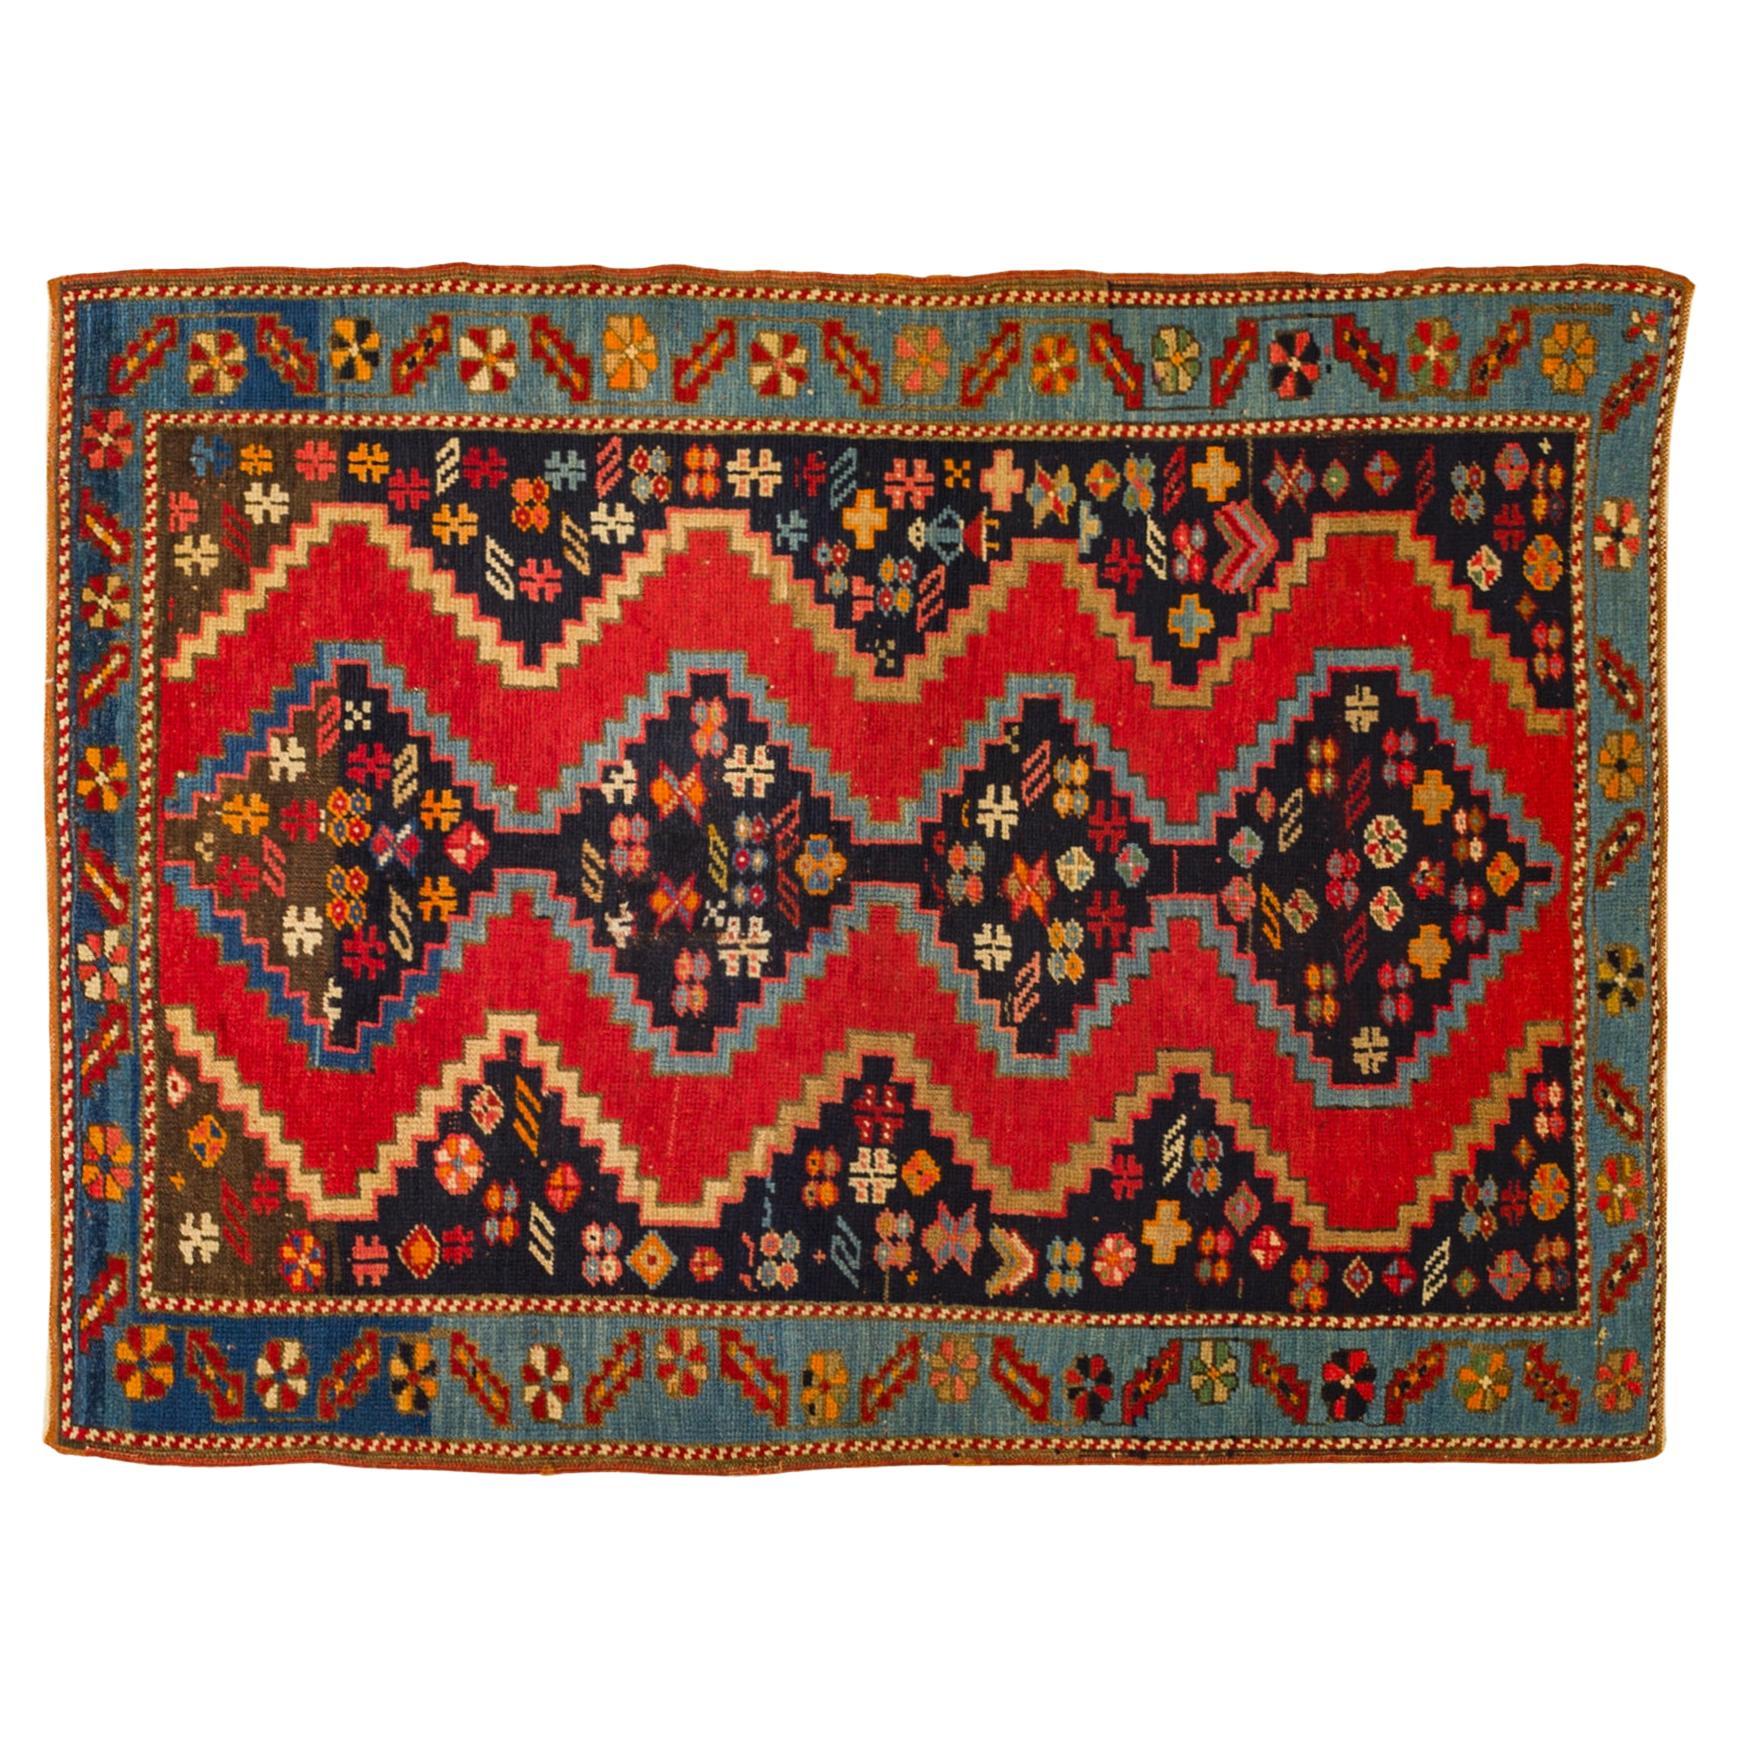 Karebagh Carpet from Caucasus